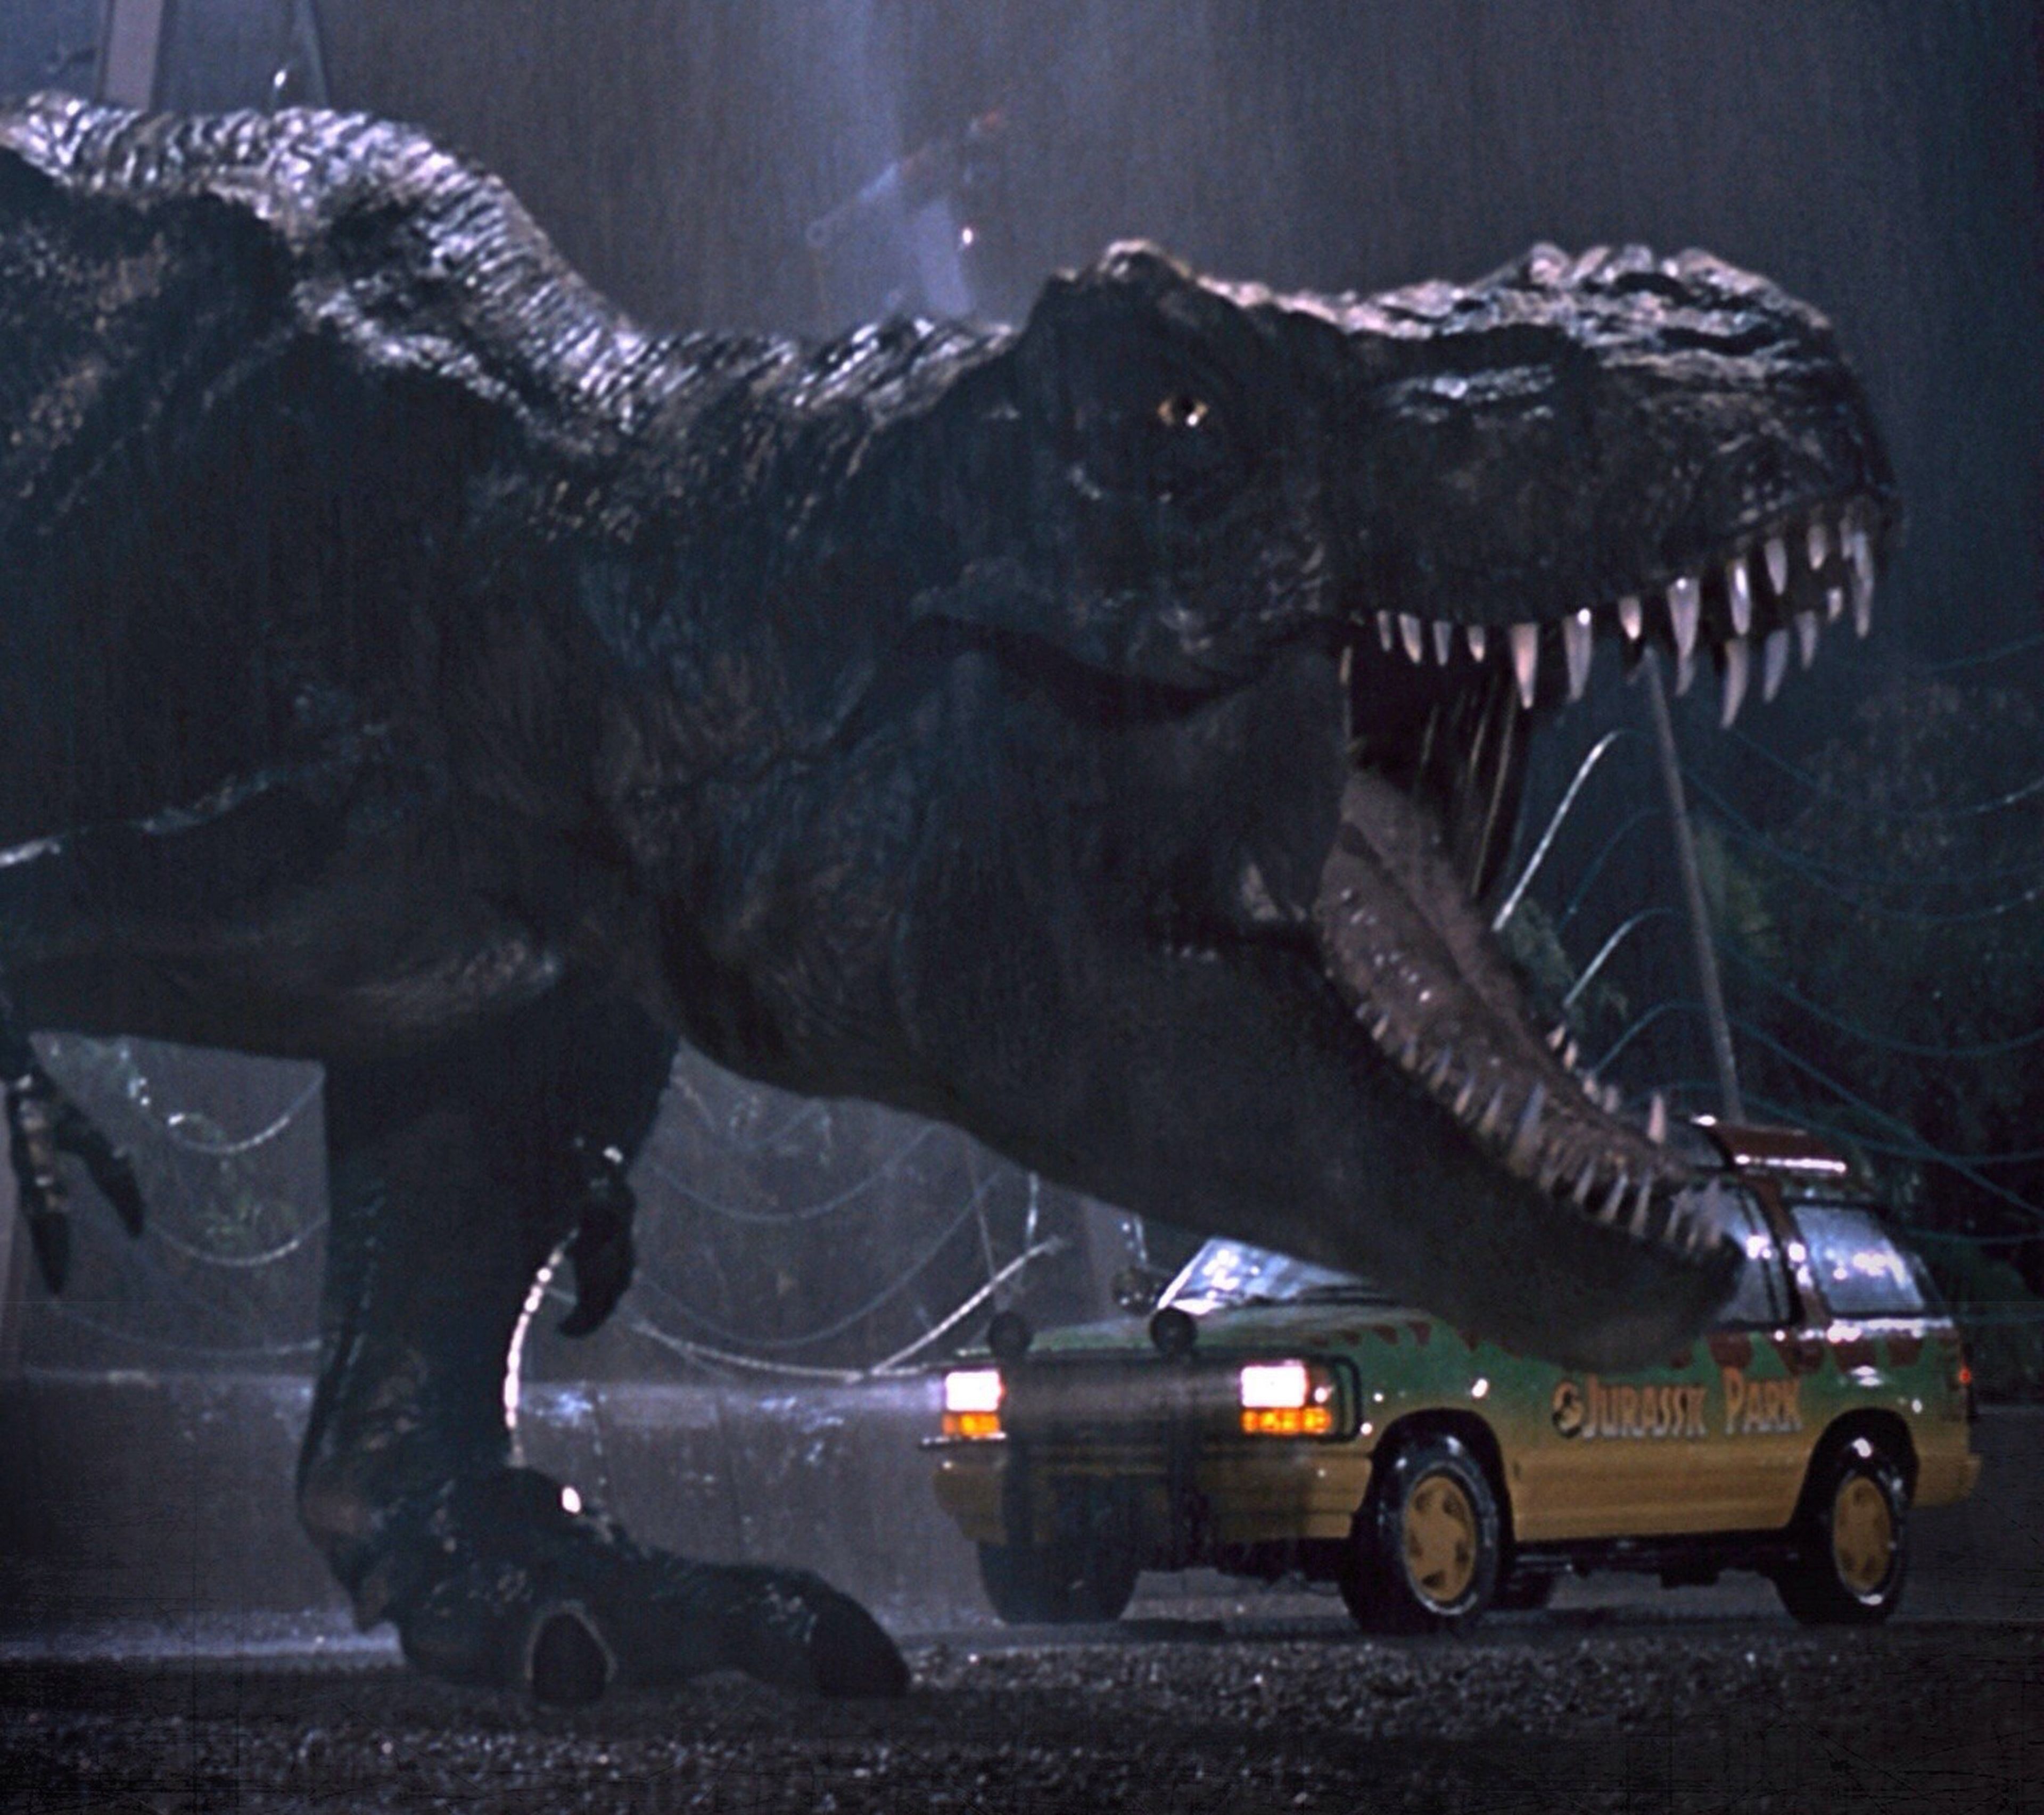 Jurassic Park: ¡Analizamos todas sus películas!